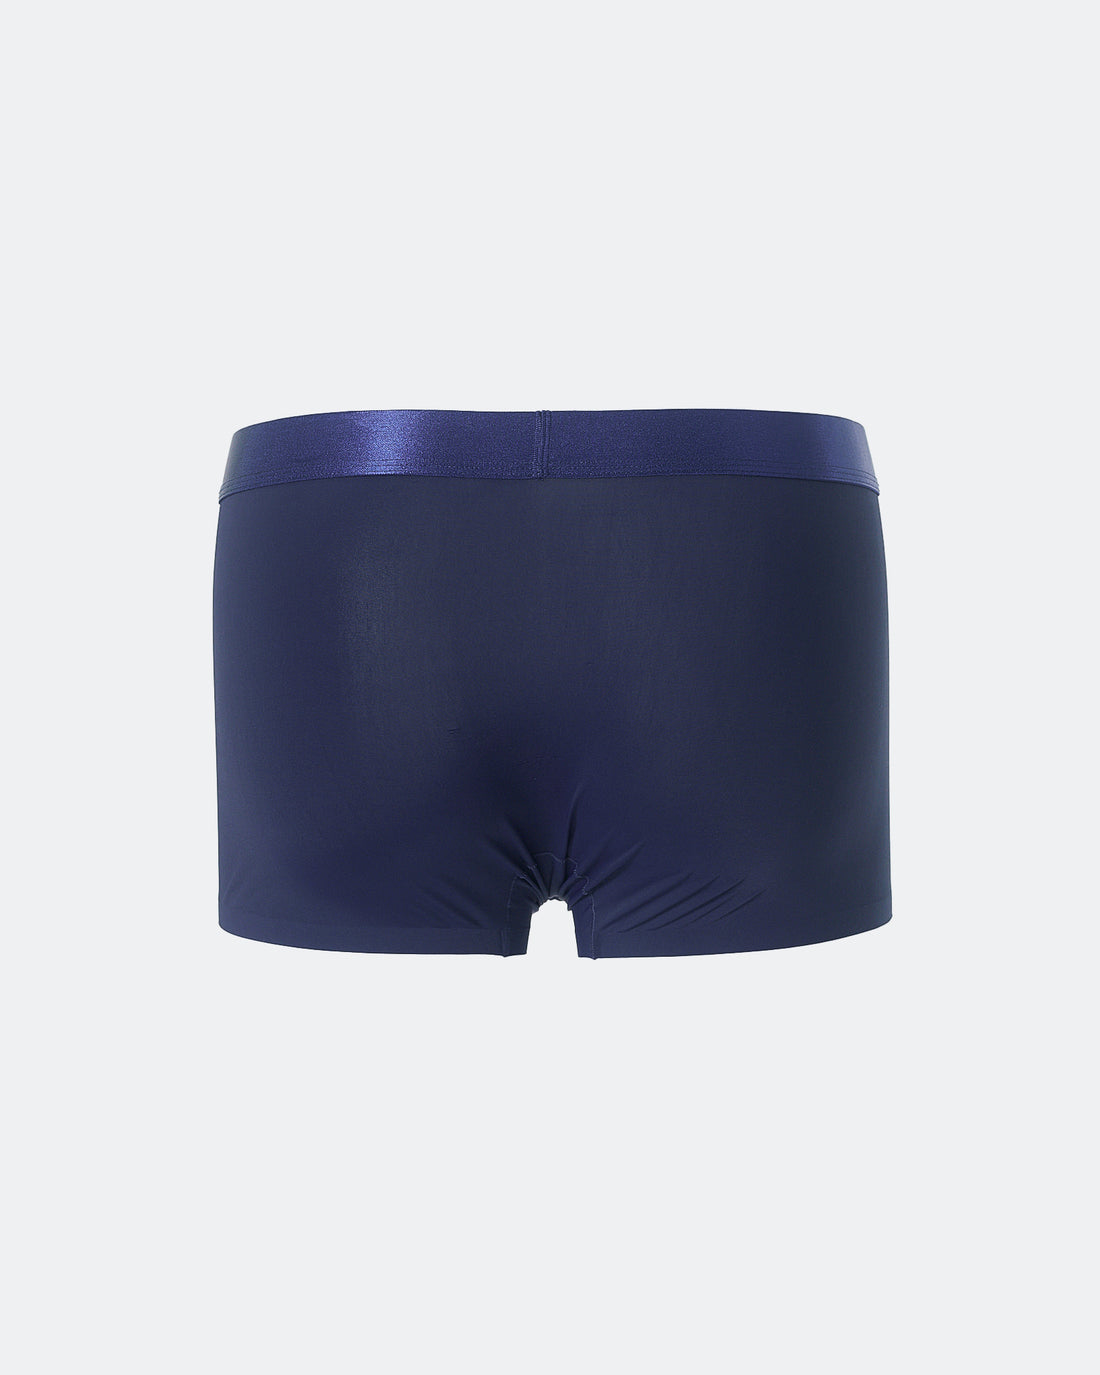 HER Vertical Logo Printed Men Blue Underwear 5.90